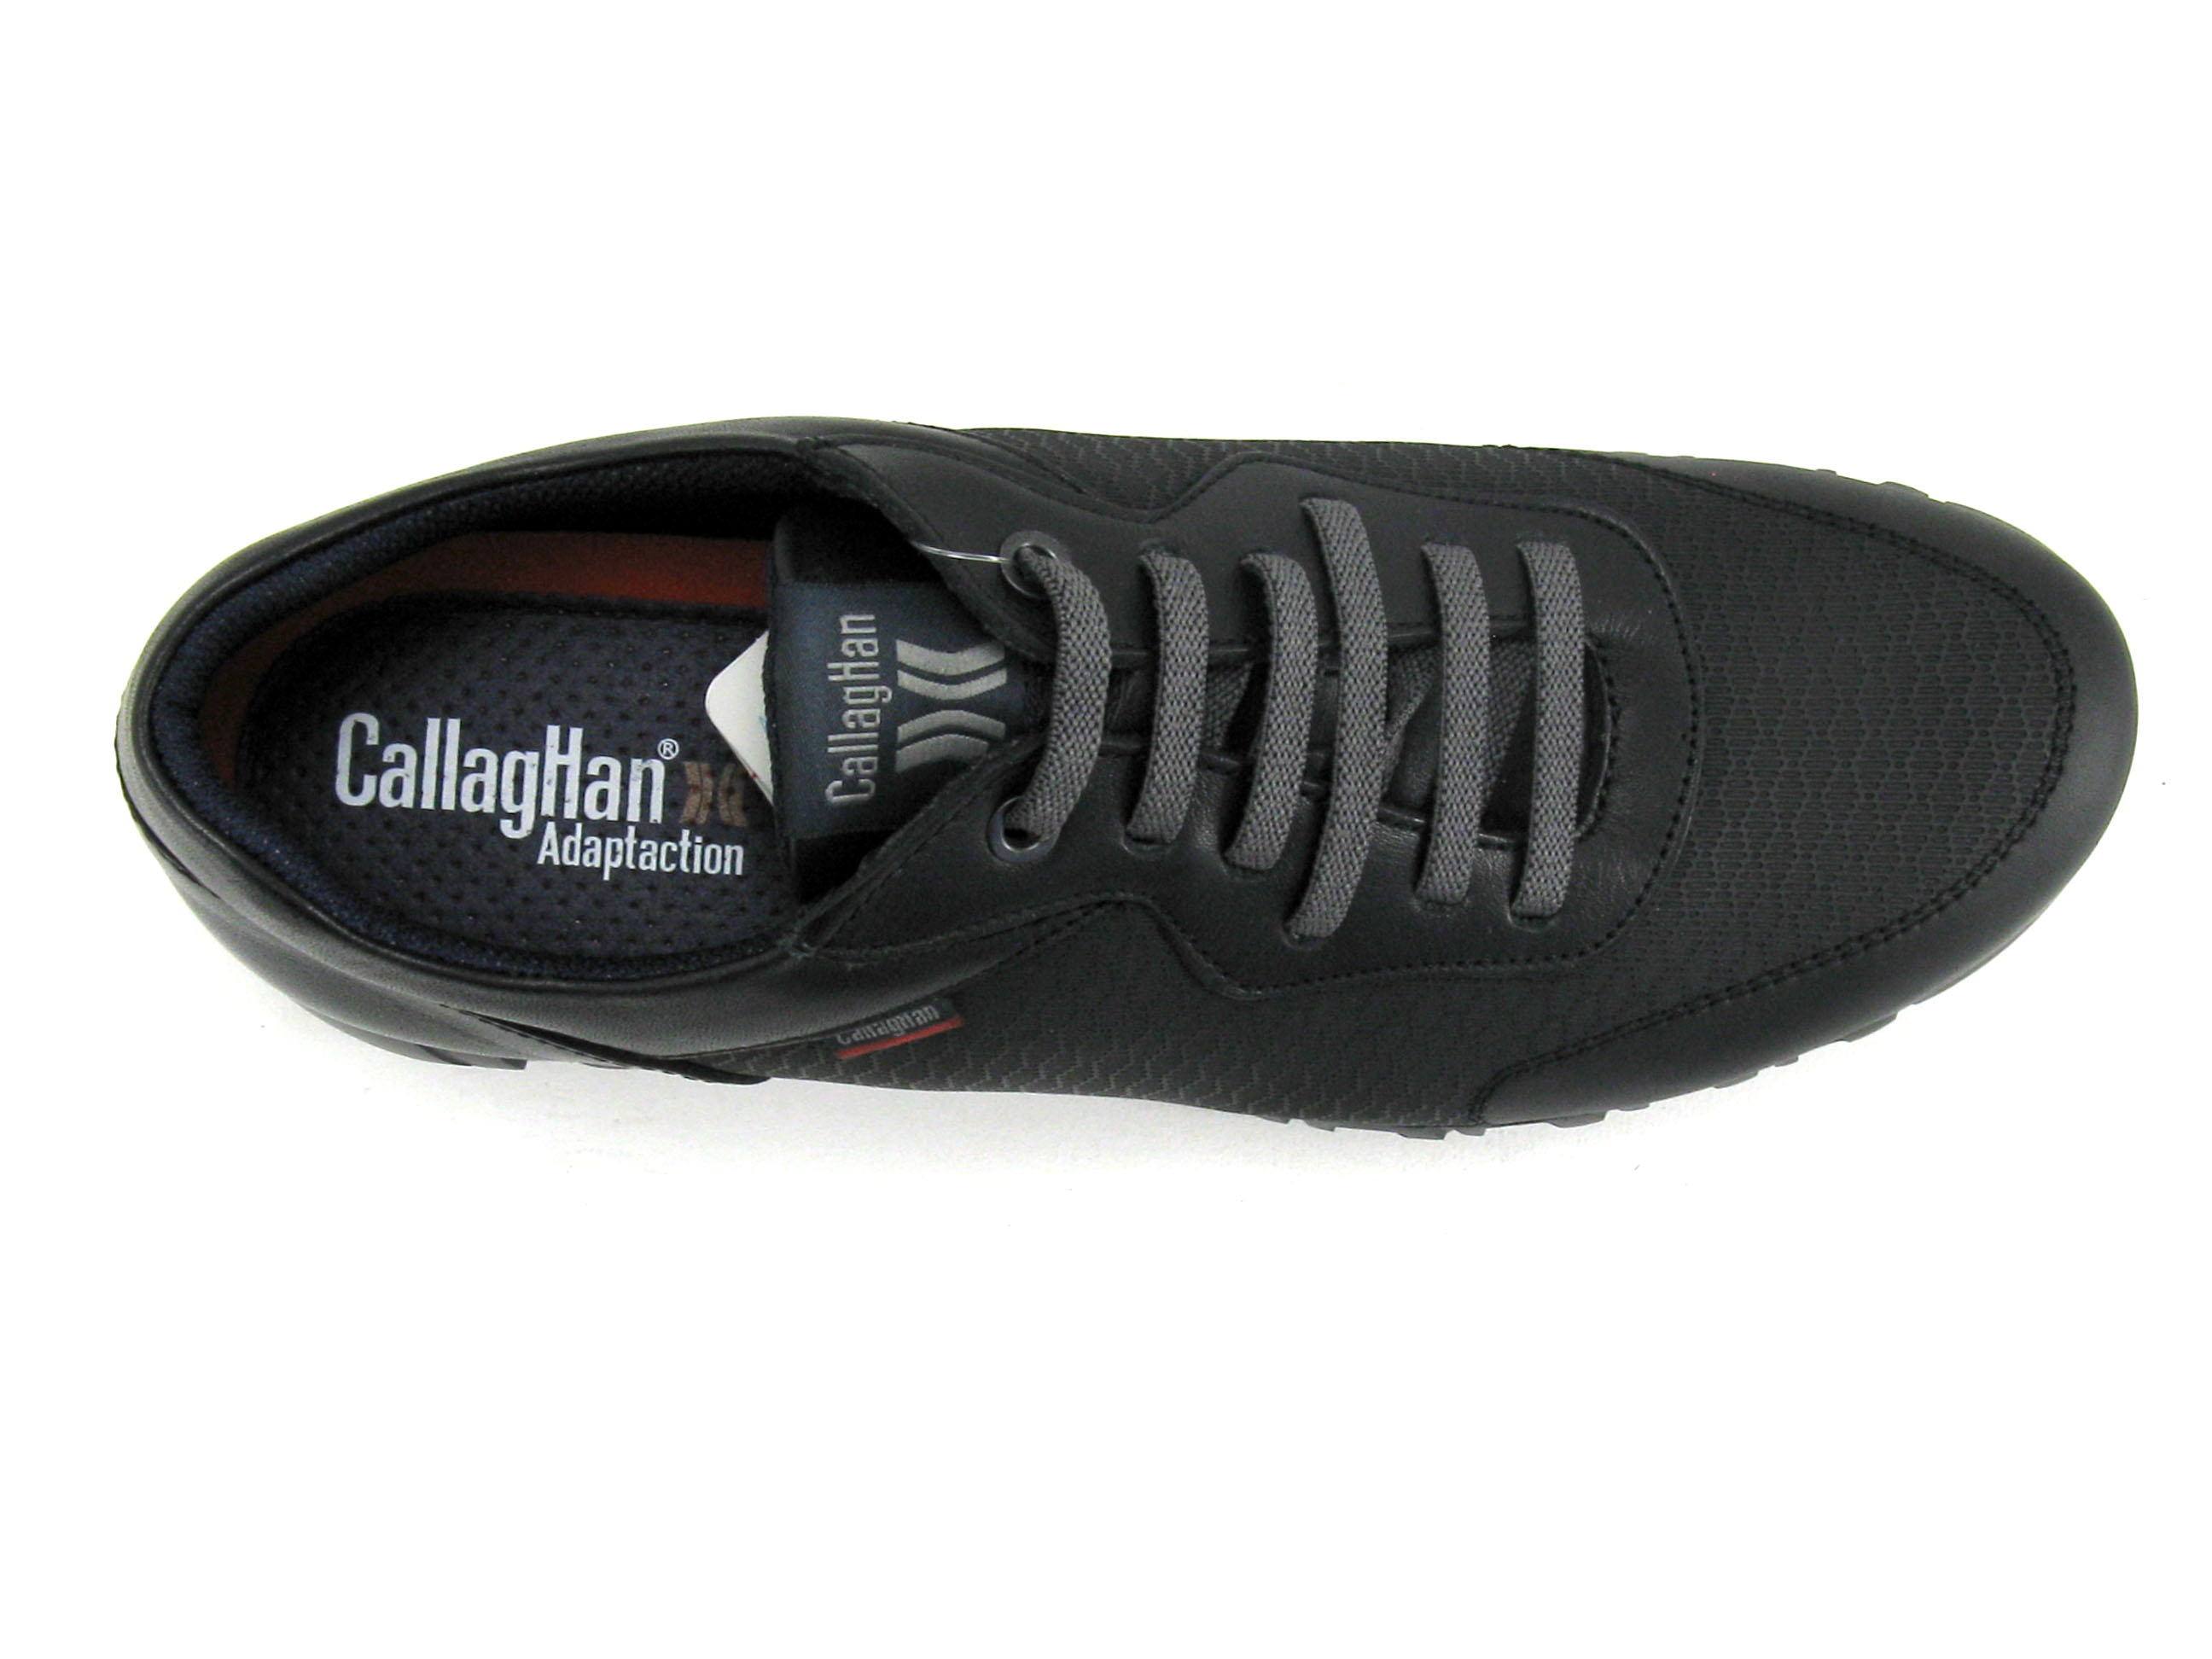 lava Aprendizaje desbloquear Achat chaussures Callaghan Homme Basket, vente Callaghan Adaptaction 12900  Noir - Basket Homme